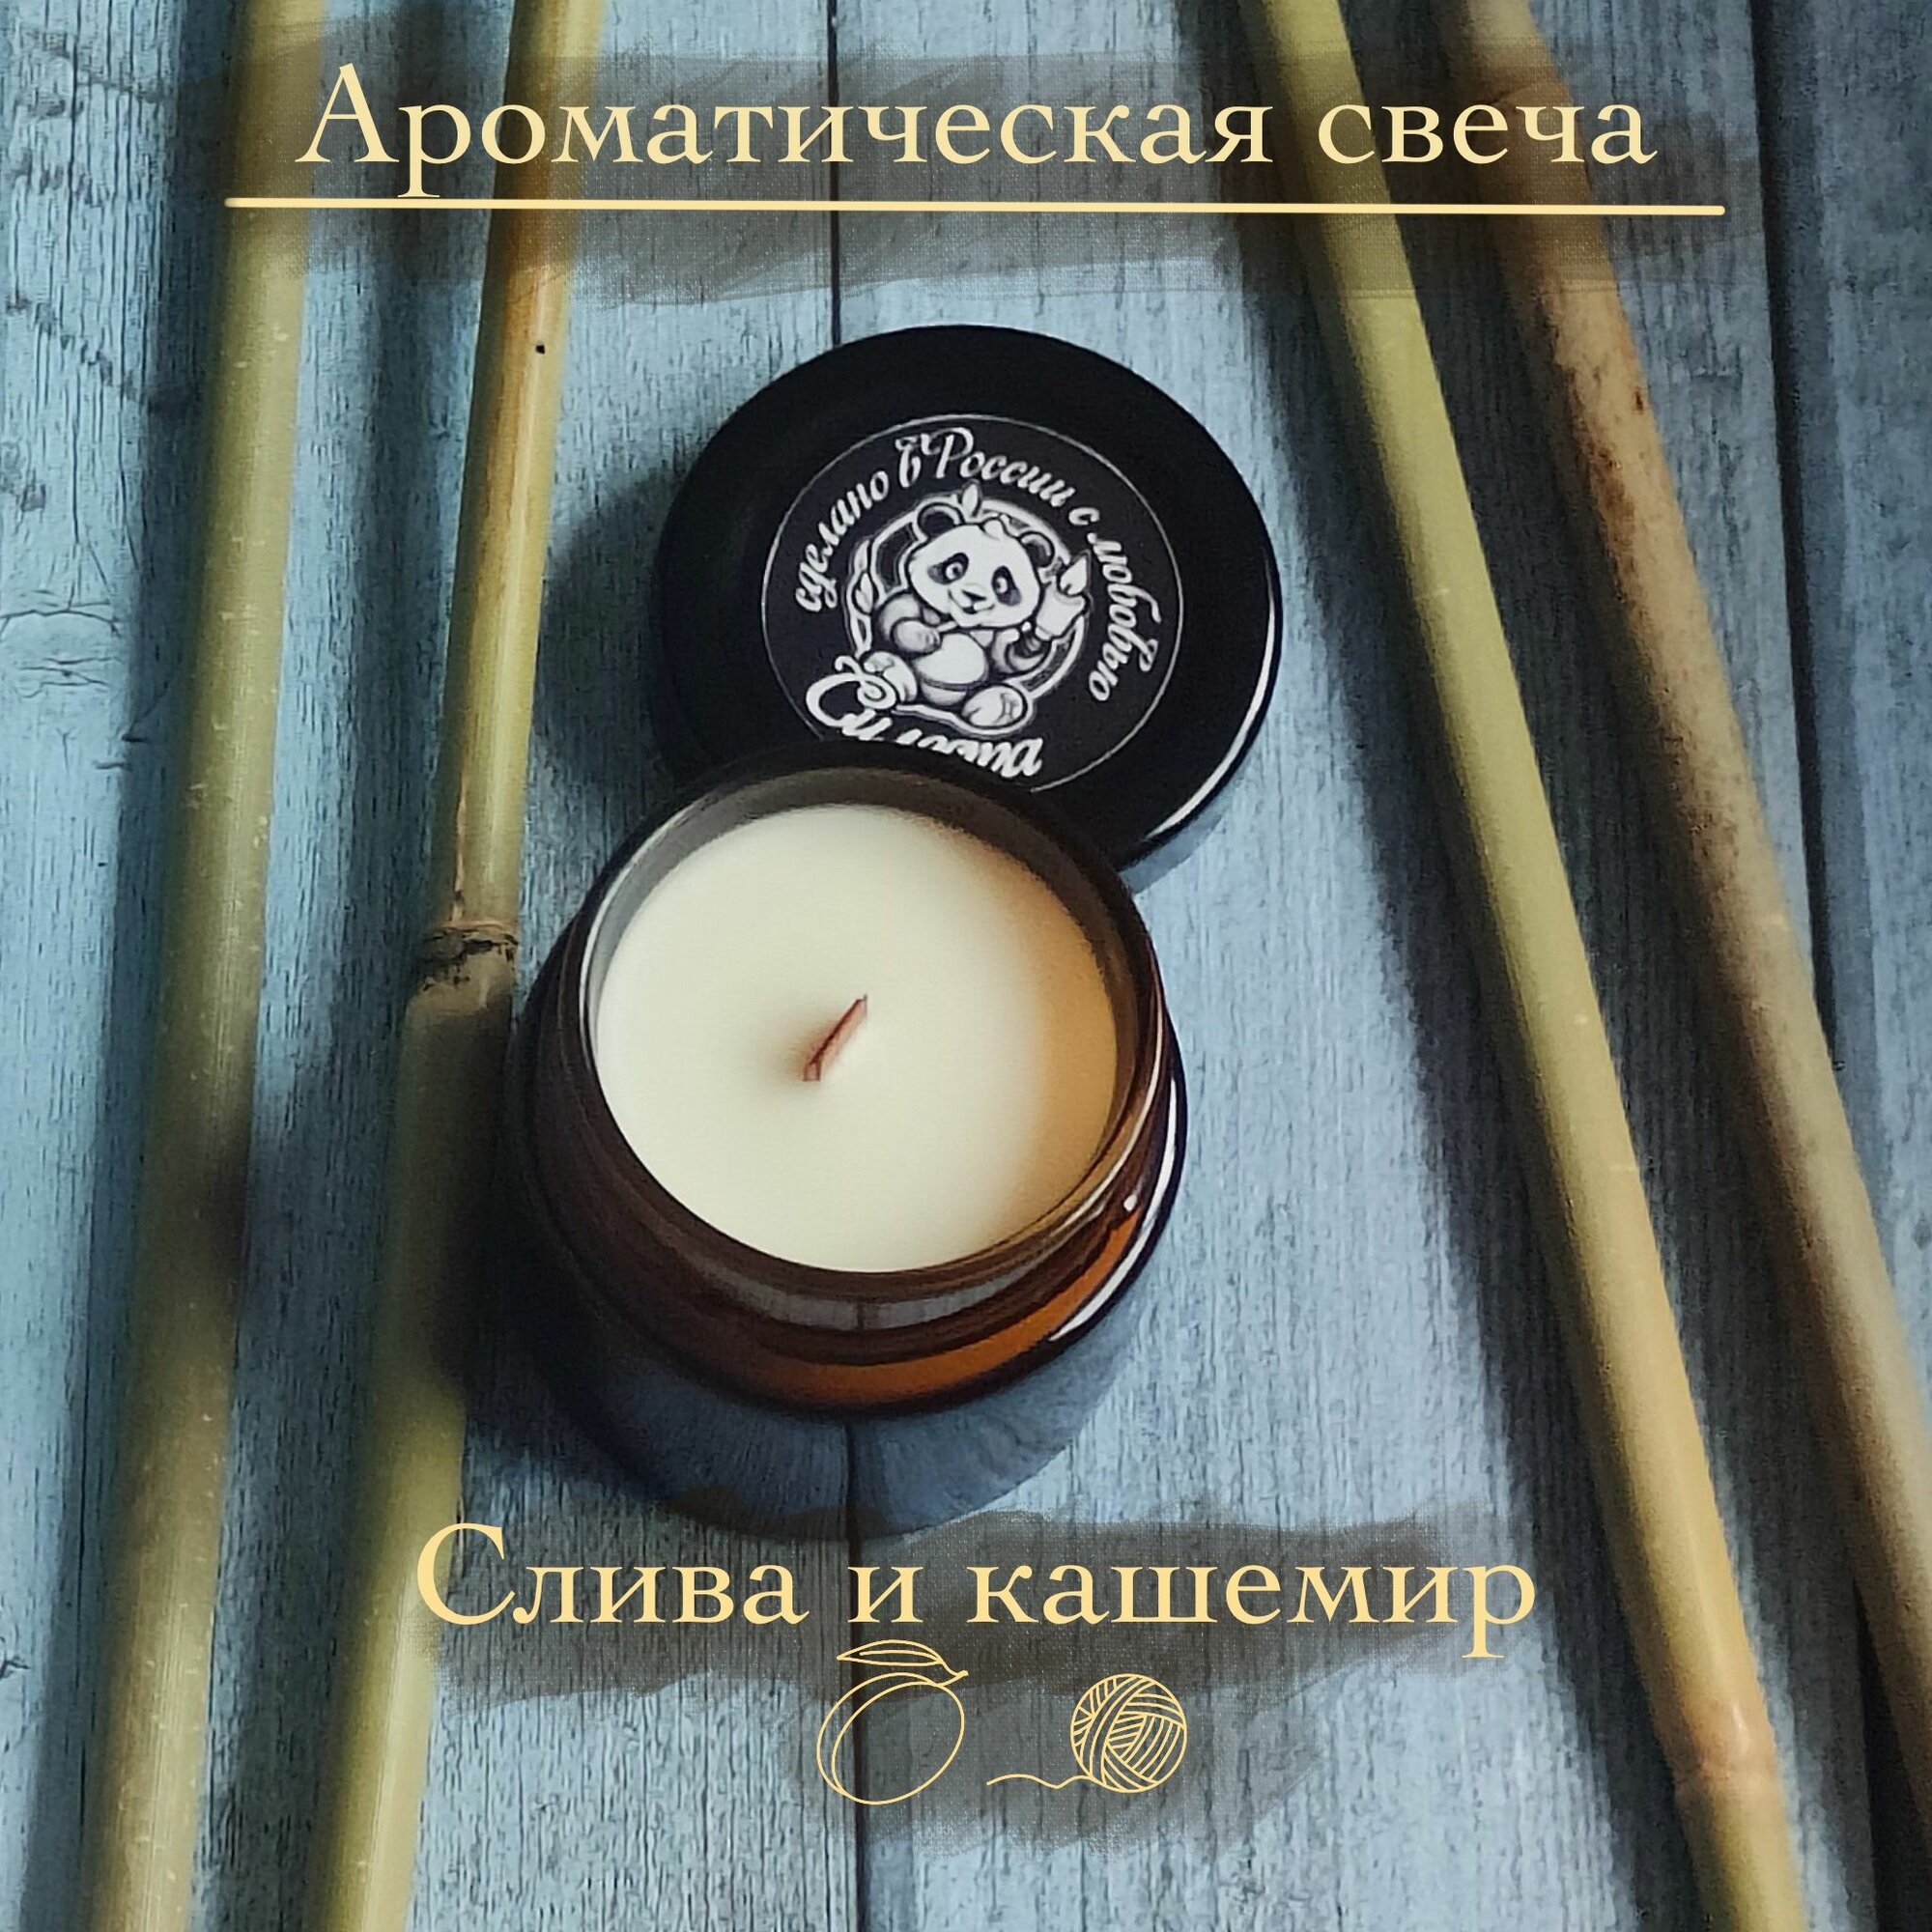 Ароматическая свеча Силеста "Слива и кашемир"